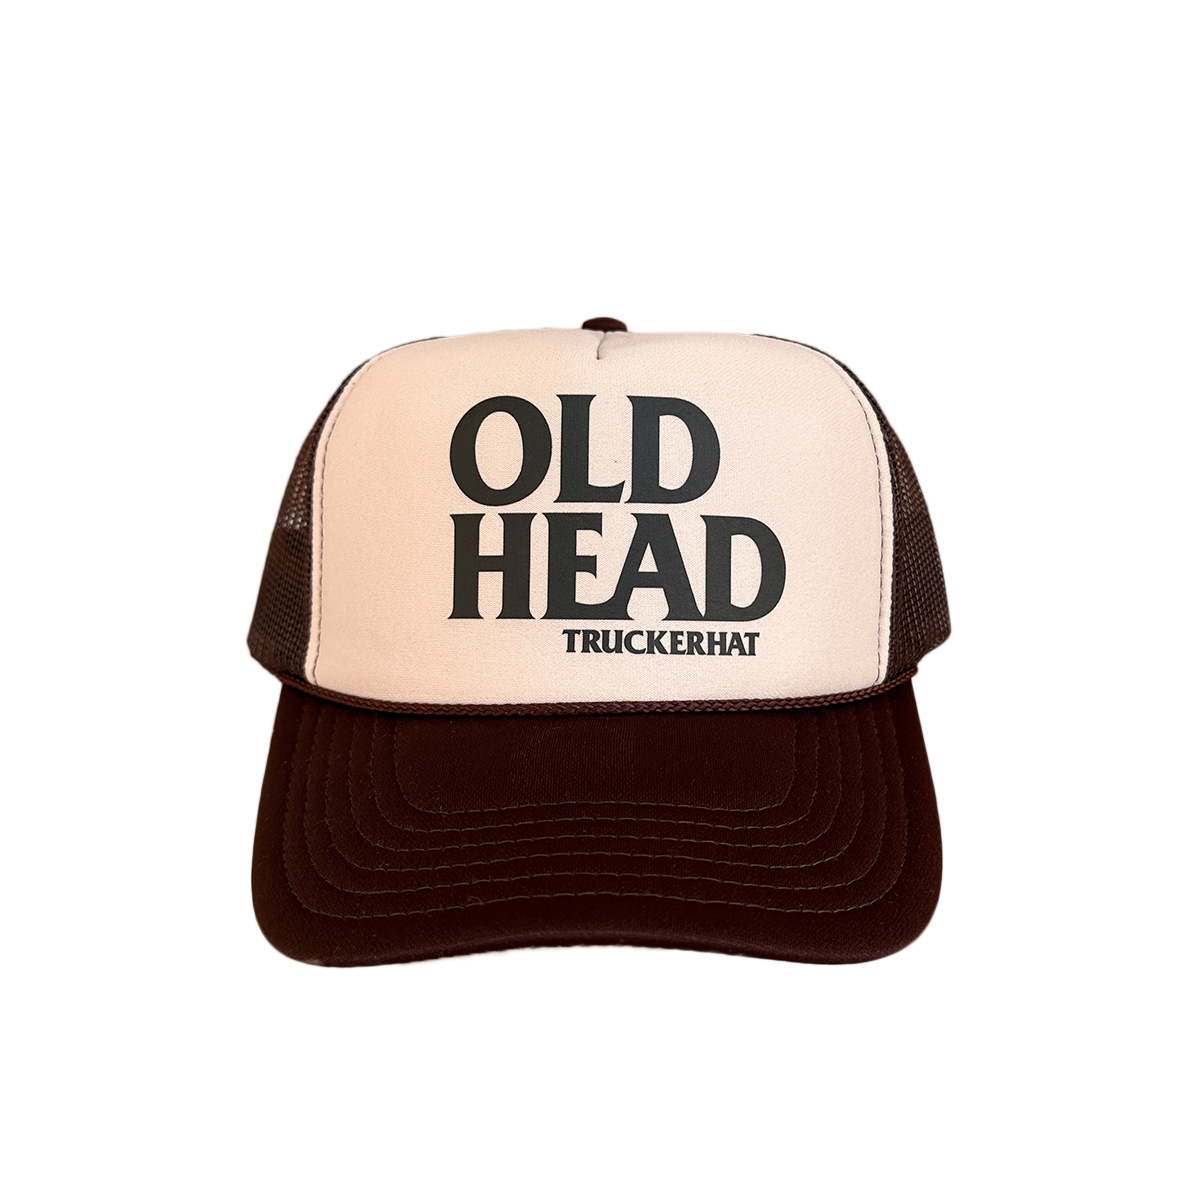 Mud Old Head Trucker Hat - Brown/Tan